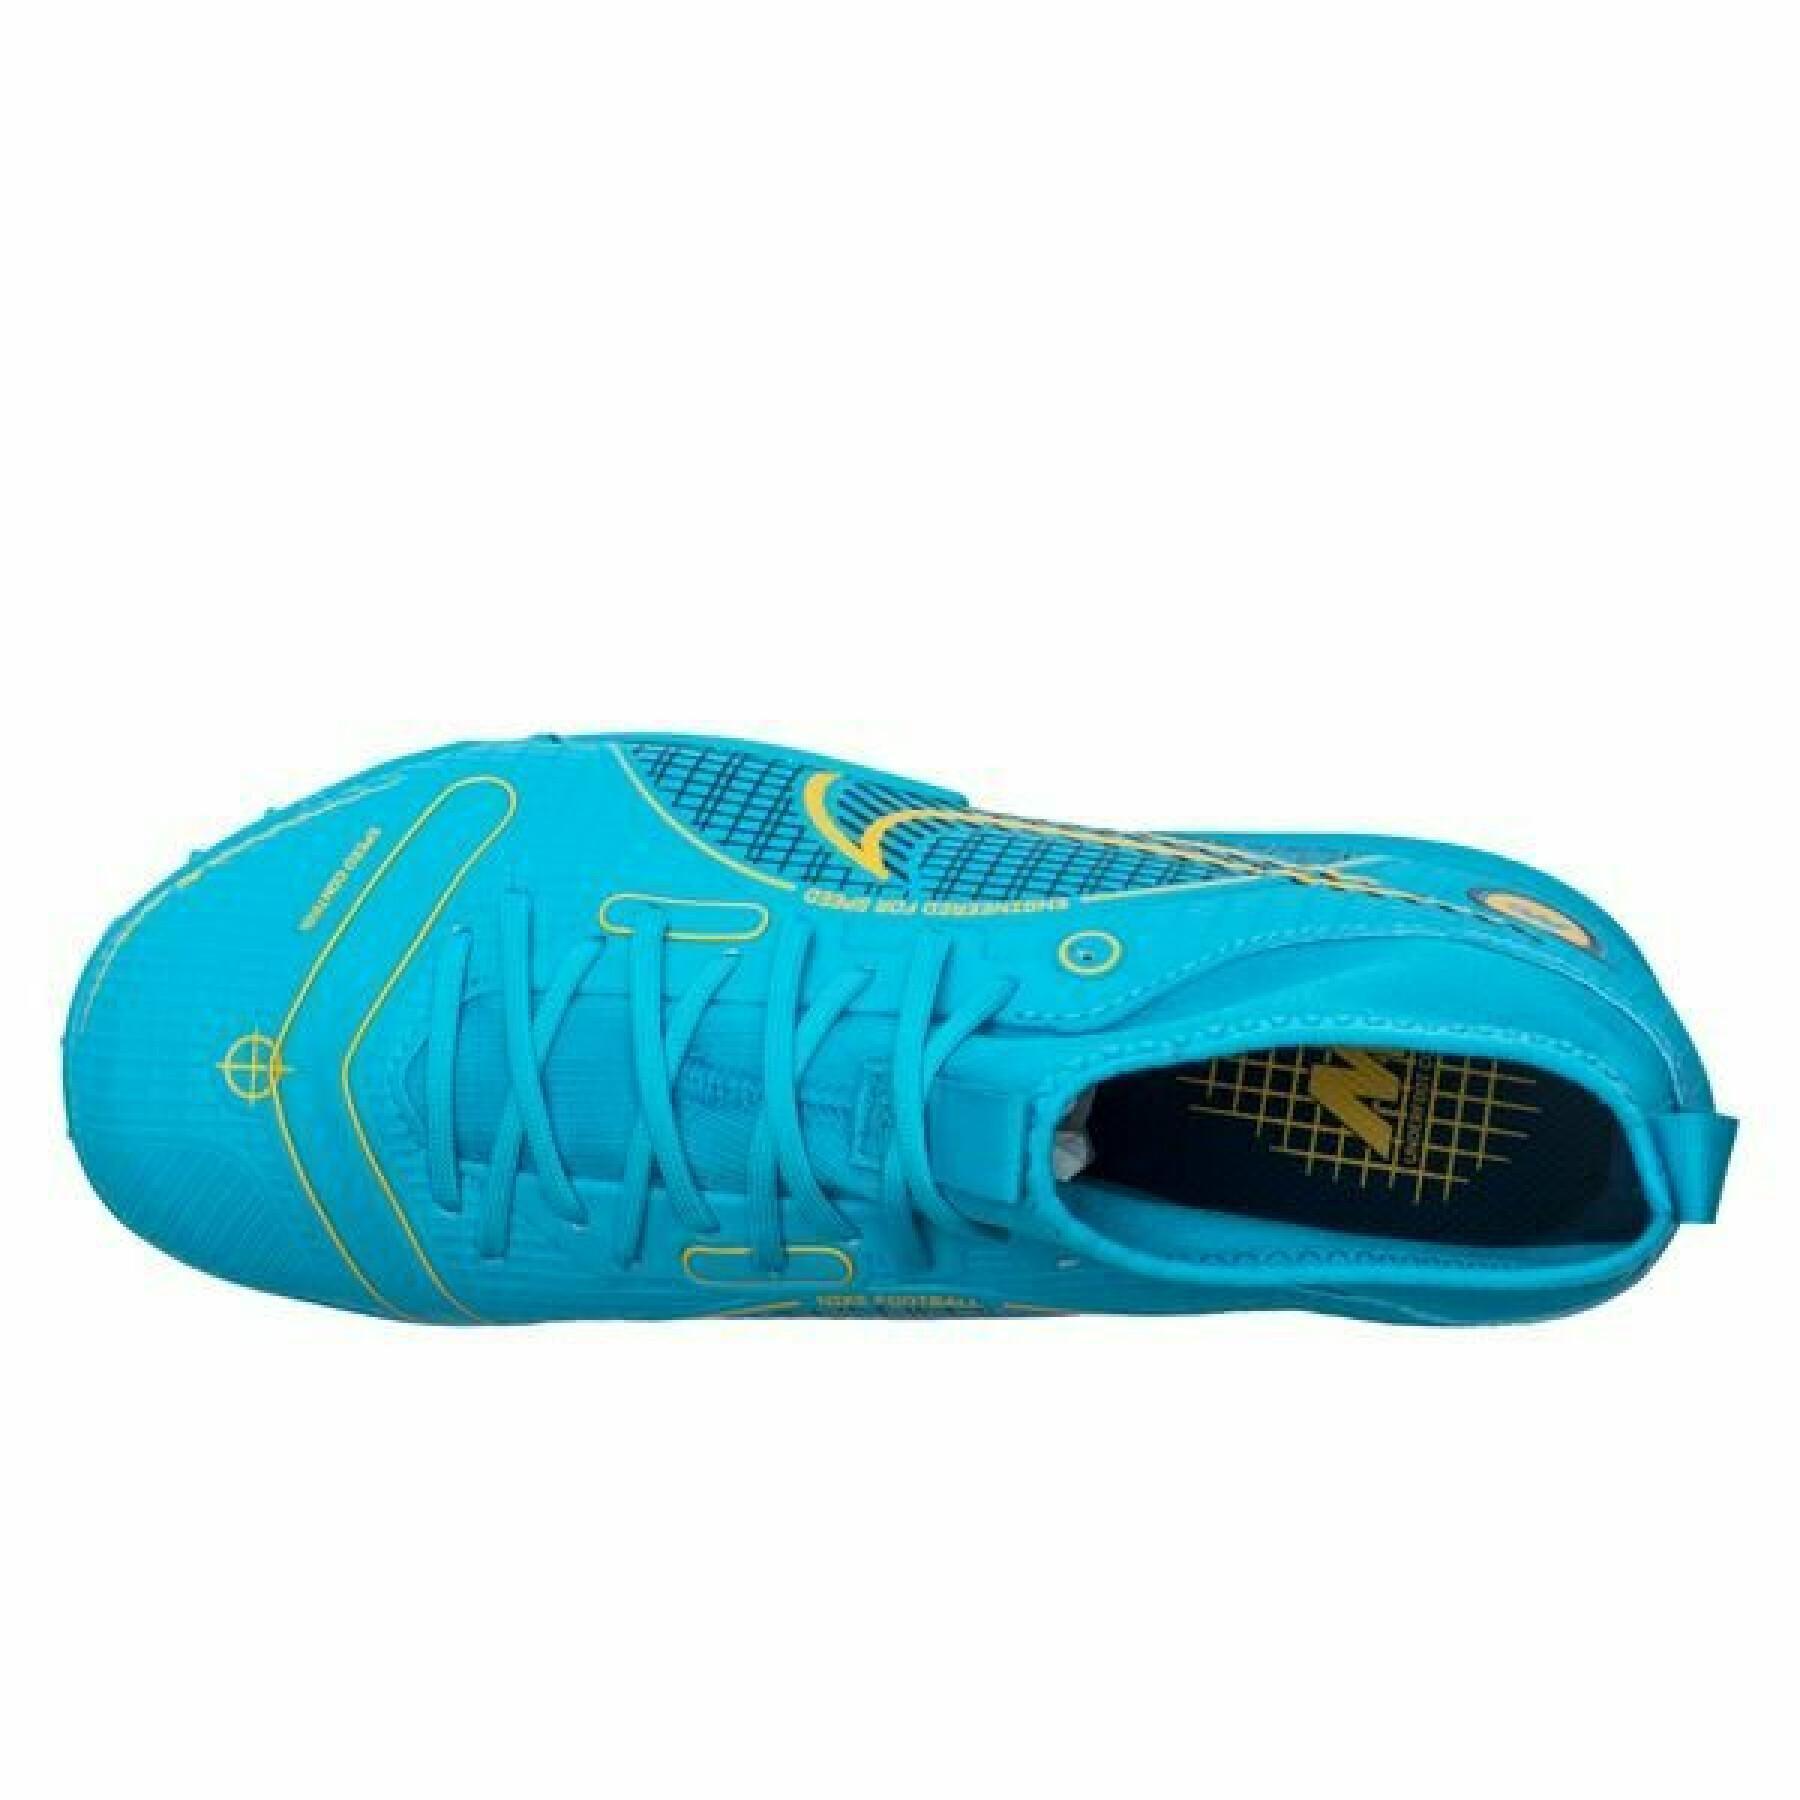 Sapatos de futebol para crianças Nike Jr. Mercurial Superfly 8 Academy TF -Blueprint Pack